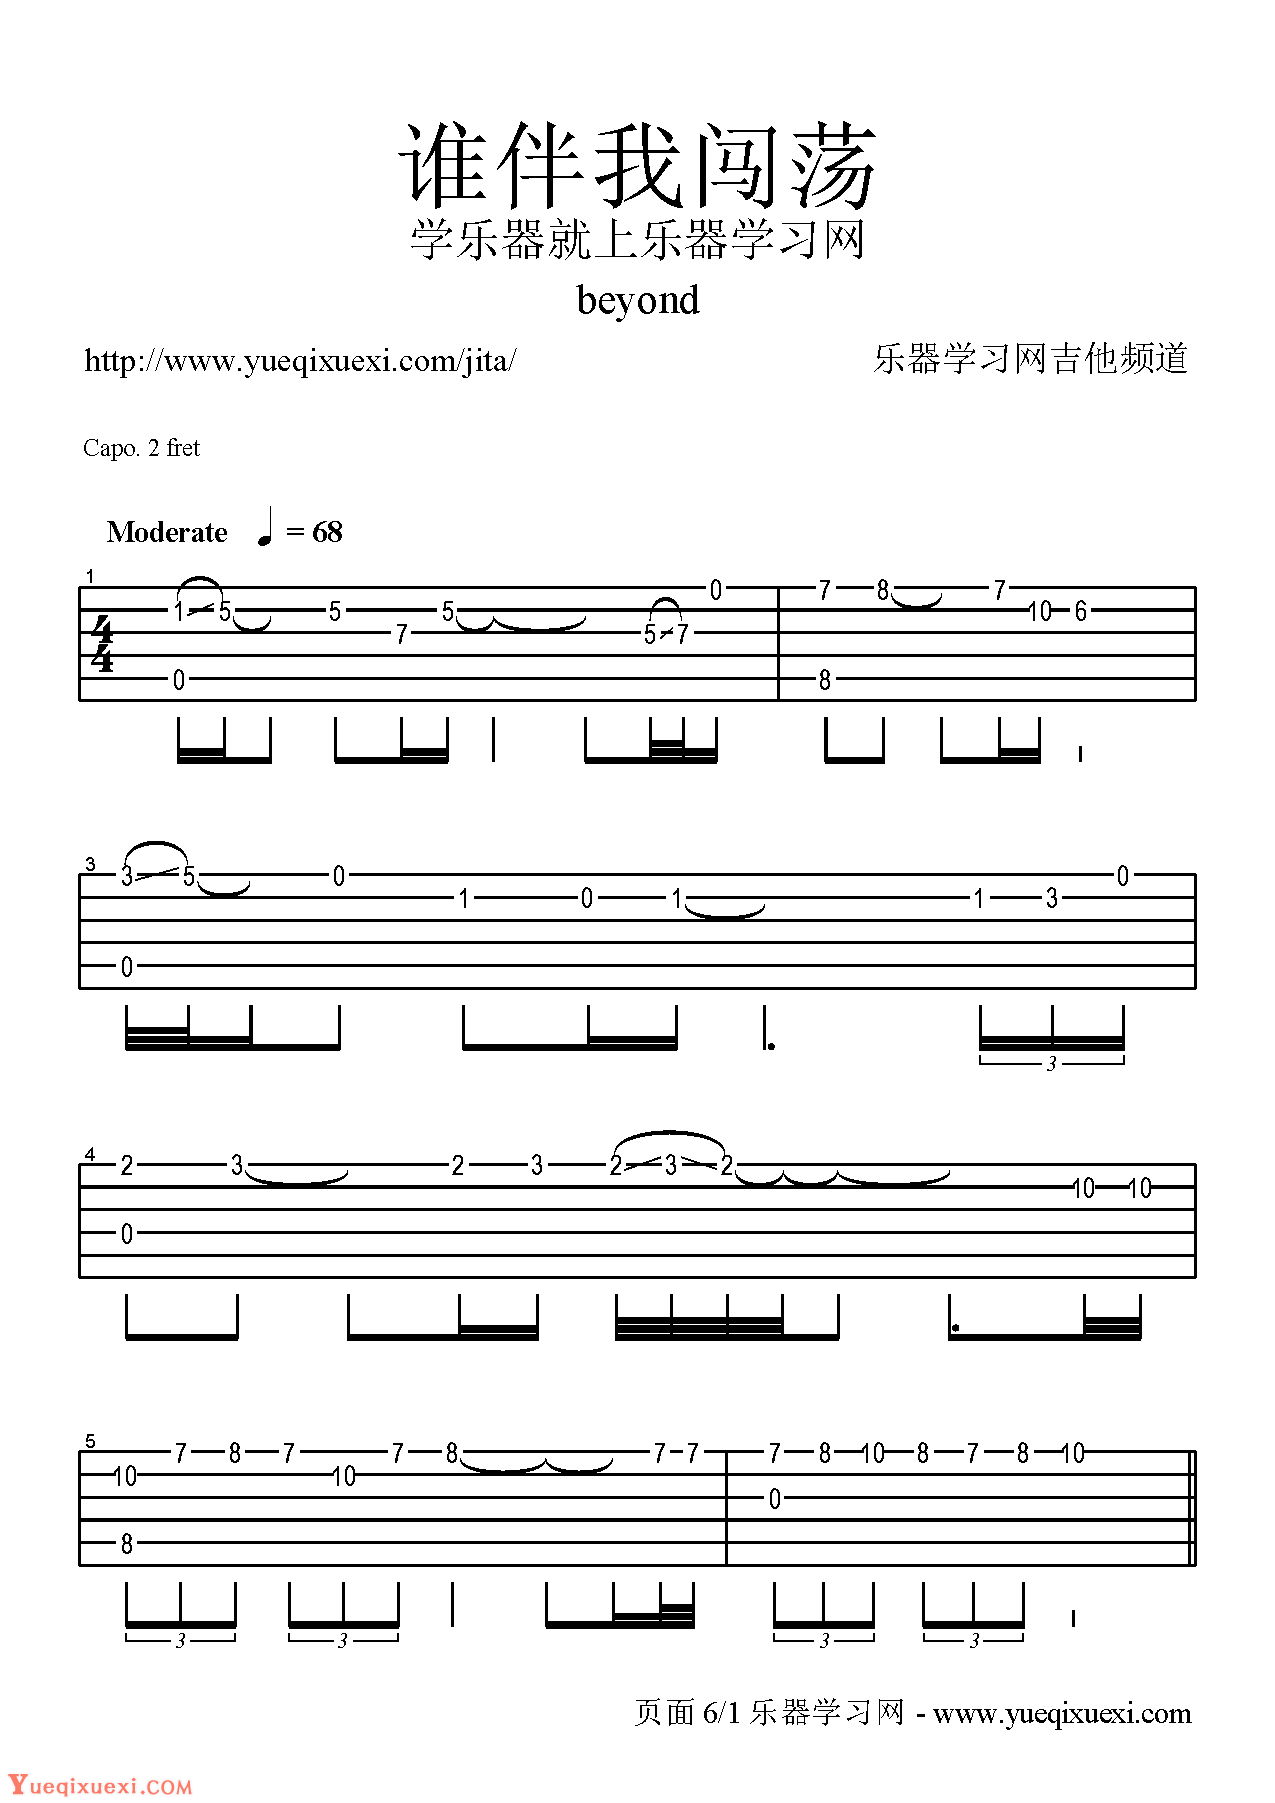 Beyond吉他谱【真的爱你】乐队总谱-吉他曲谱 - 乐器学习网